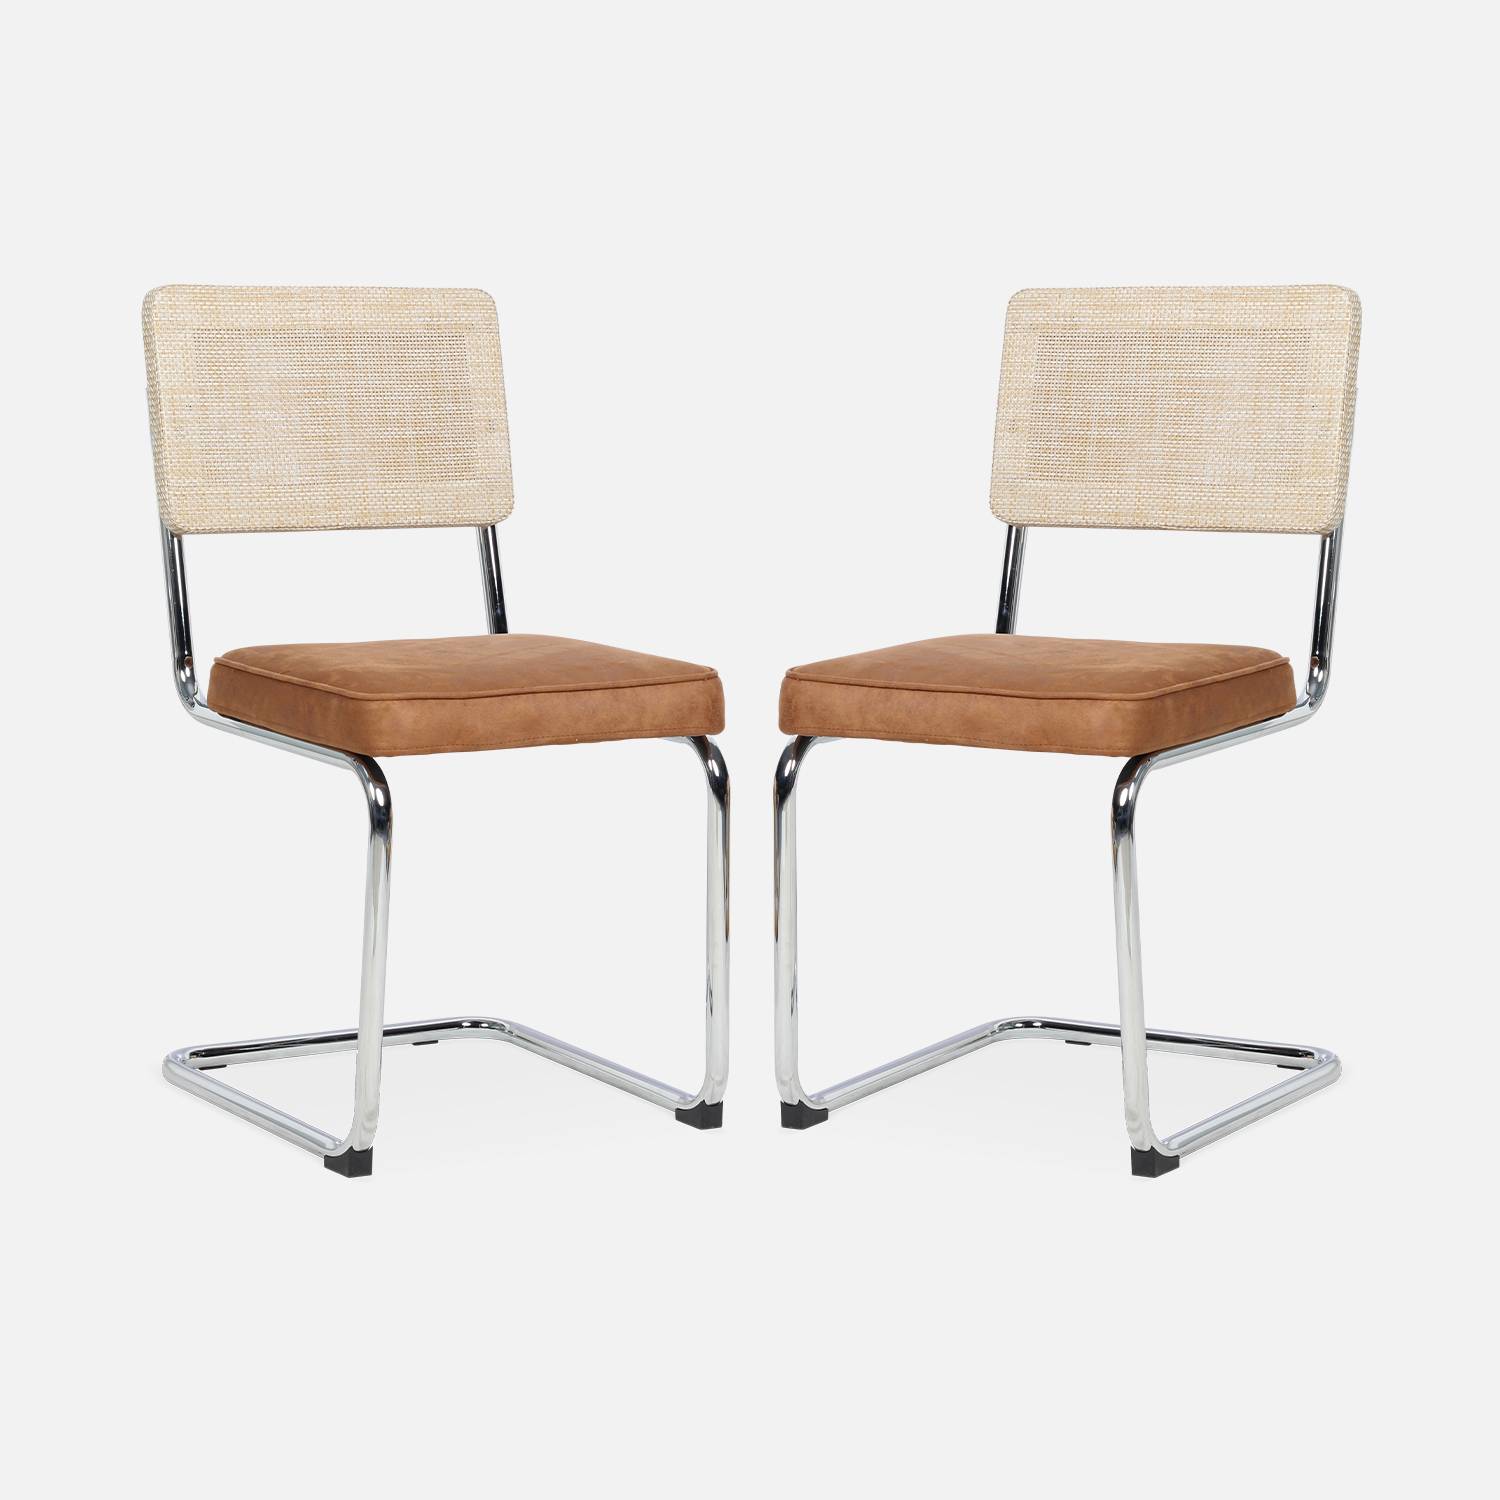 2 cadeiras cantilever - Maja - tecido castanho claro e resina com efeito rattan, 46 x 54,5 x 84,5 cm Photo5